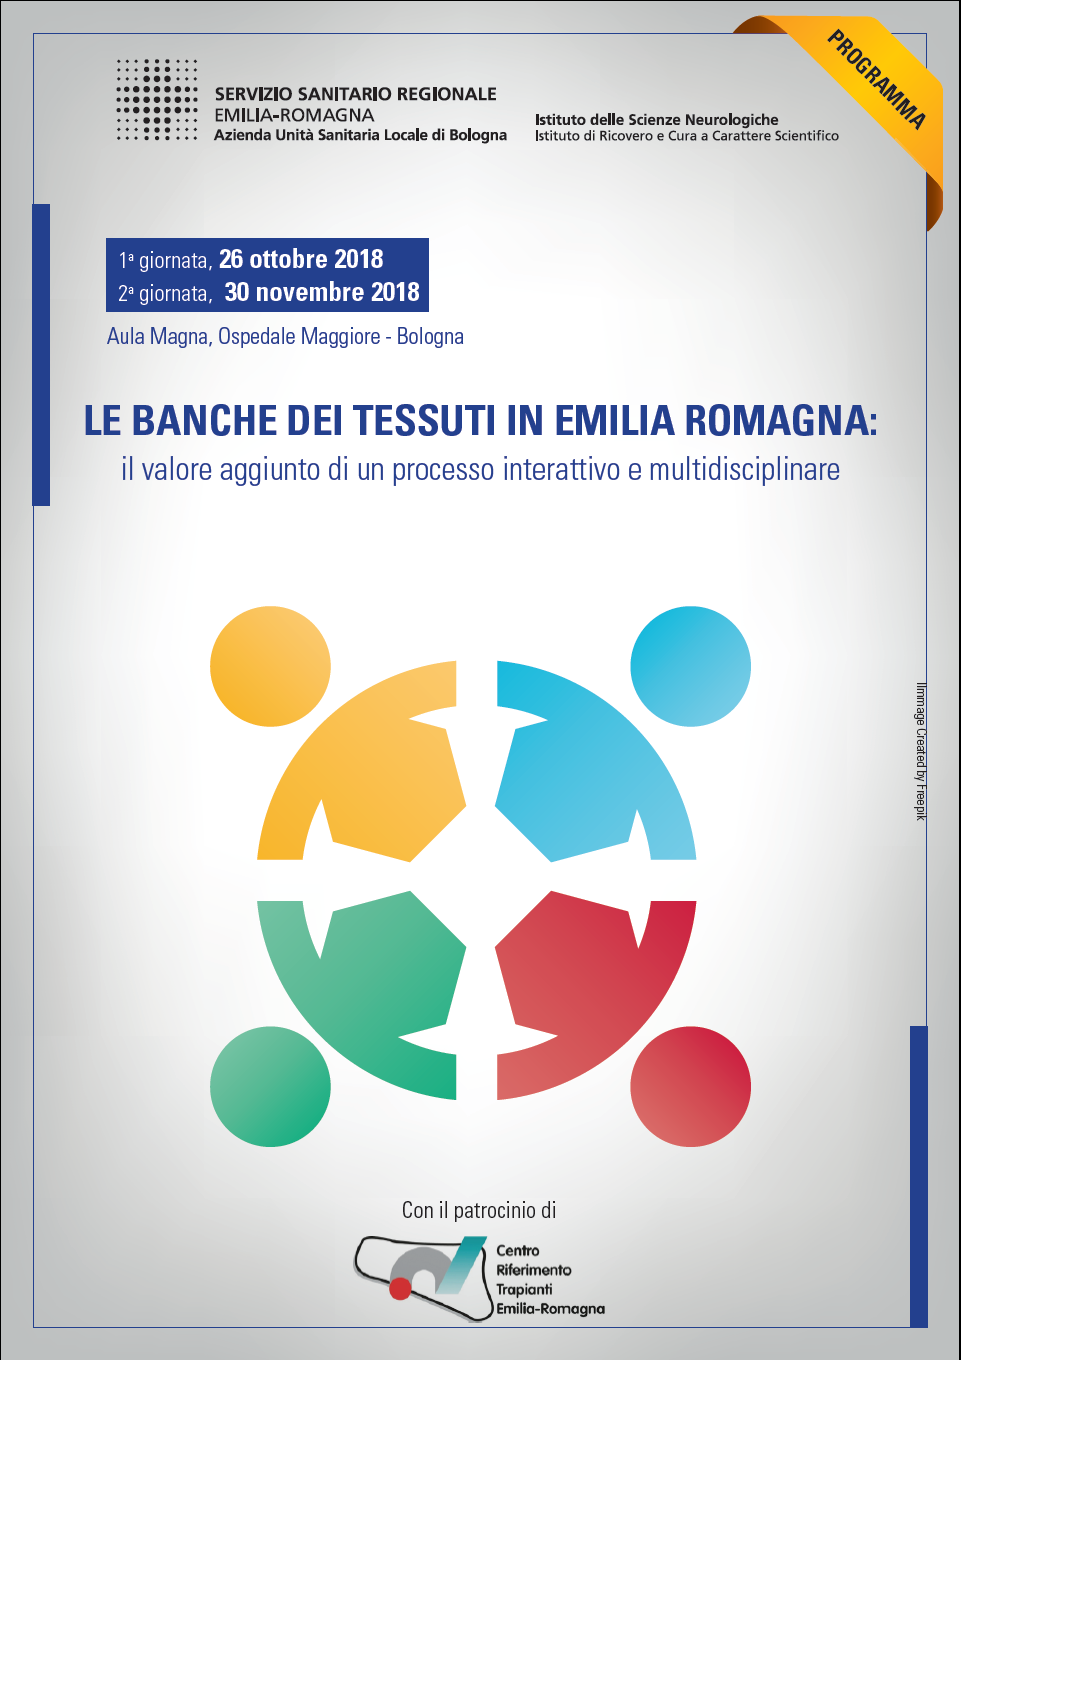 Le Banche dei Tessuti in Emilia Romagna: il valore aggiunto di un processo interattivo e multidisciplinare